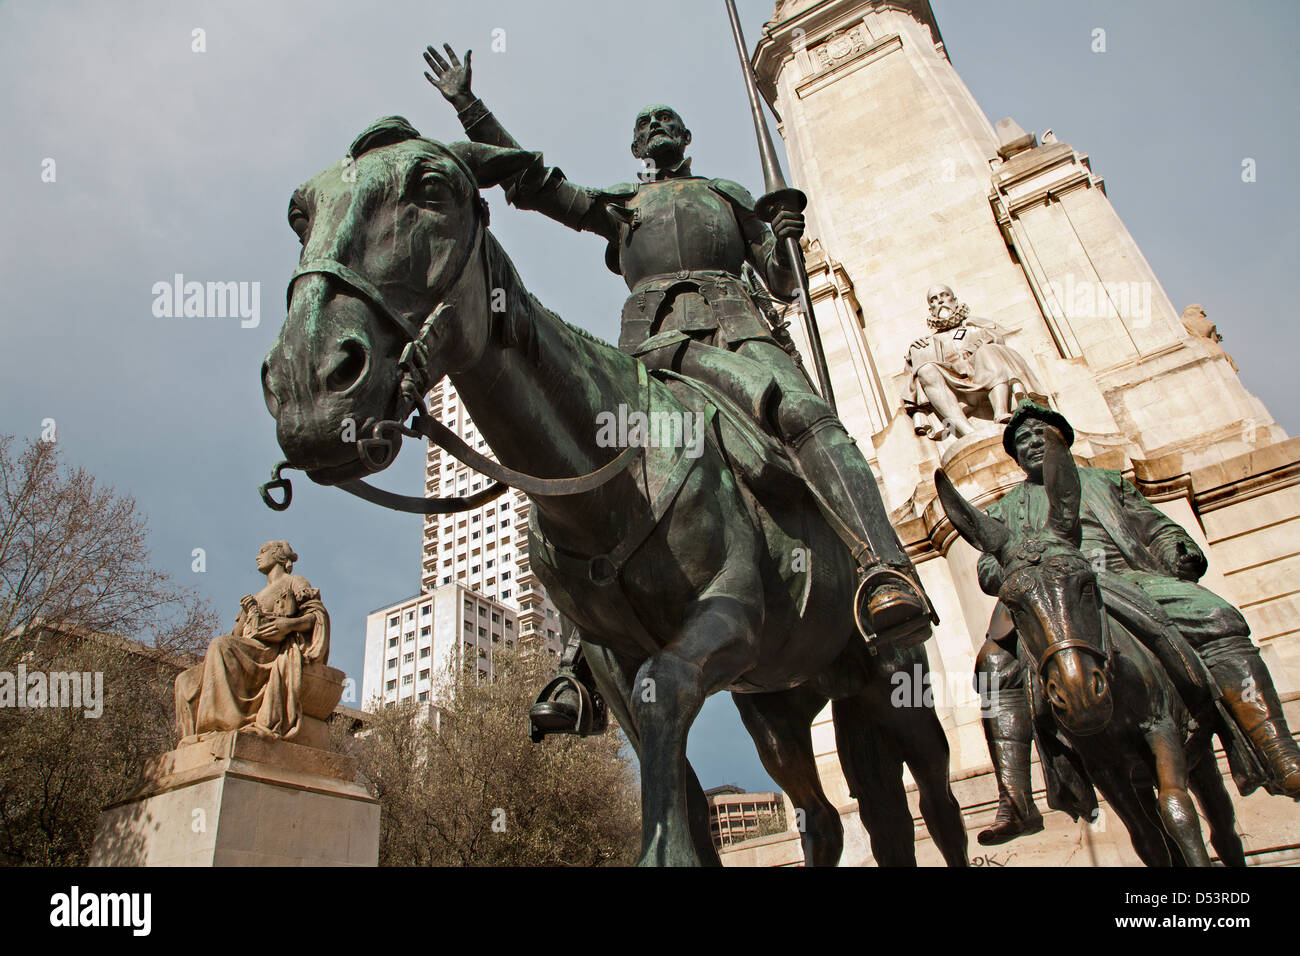 Madrid - Don Quijote und Sancho Panza vom Cervantes-Denkmal des Bildhauers Lorenzo Coullaut Valera (1925-1930) auf der Plaza Espana. Stockfoto